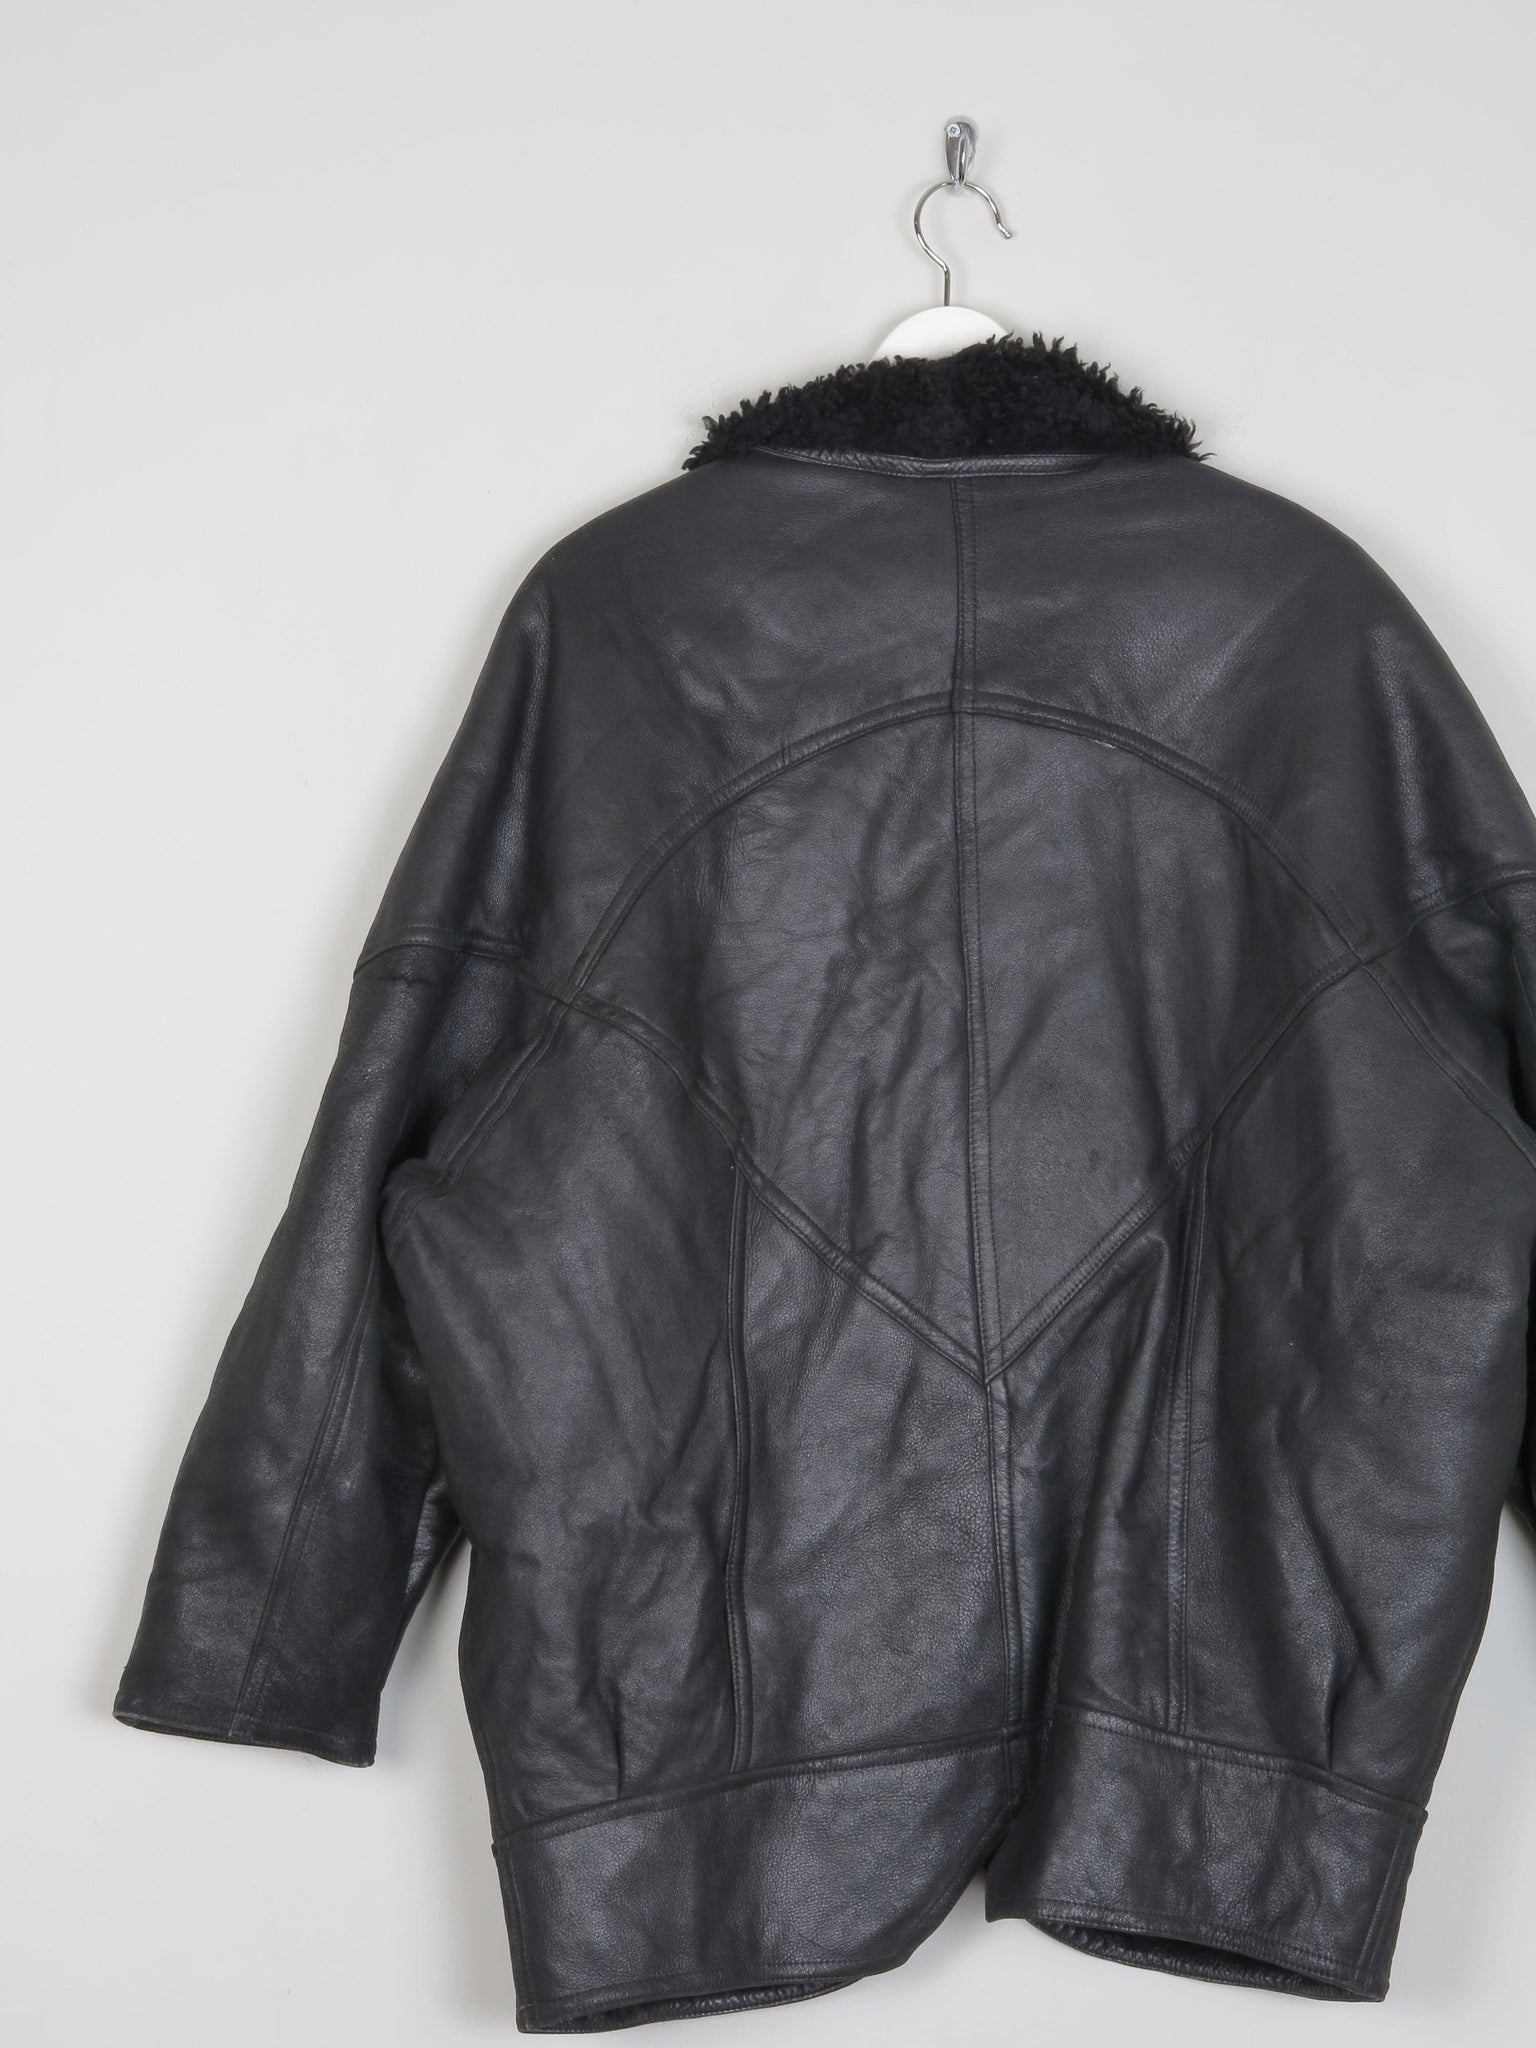 Women’s Vintage Black Leather Sheepskin Oversized Jacket M/L - The Harlequin